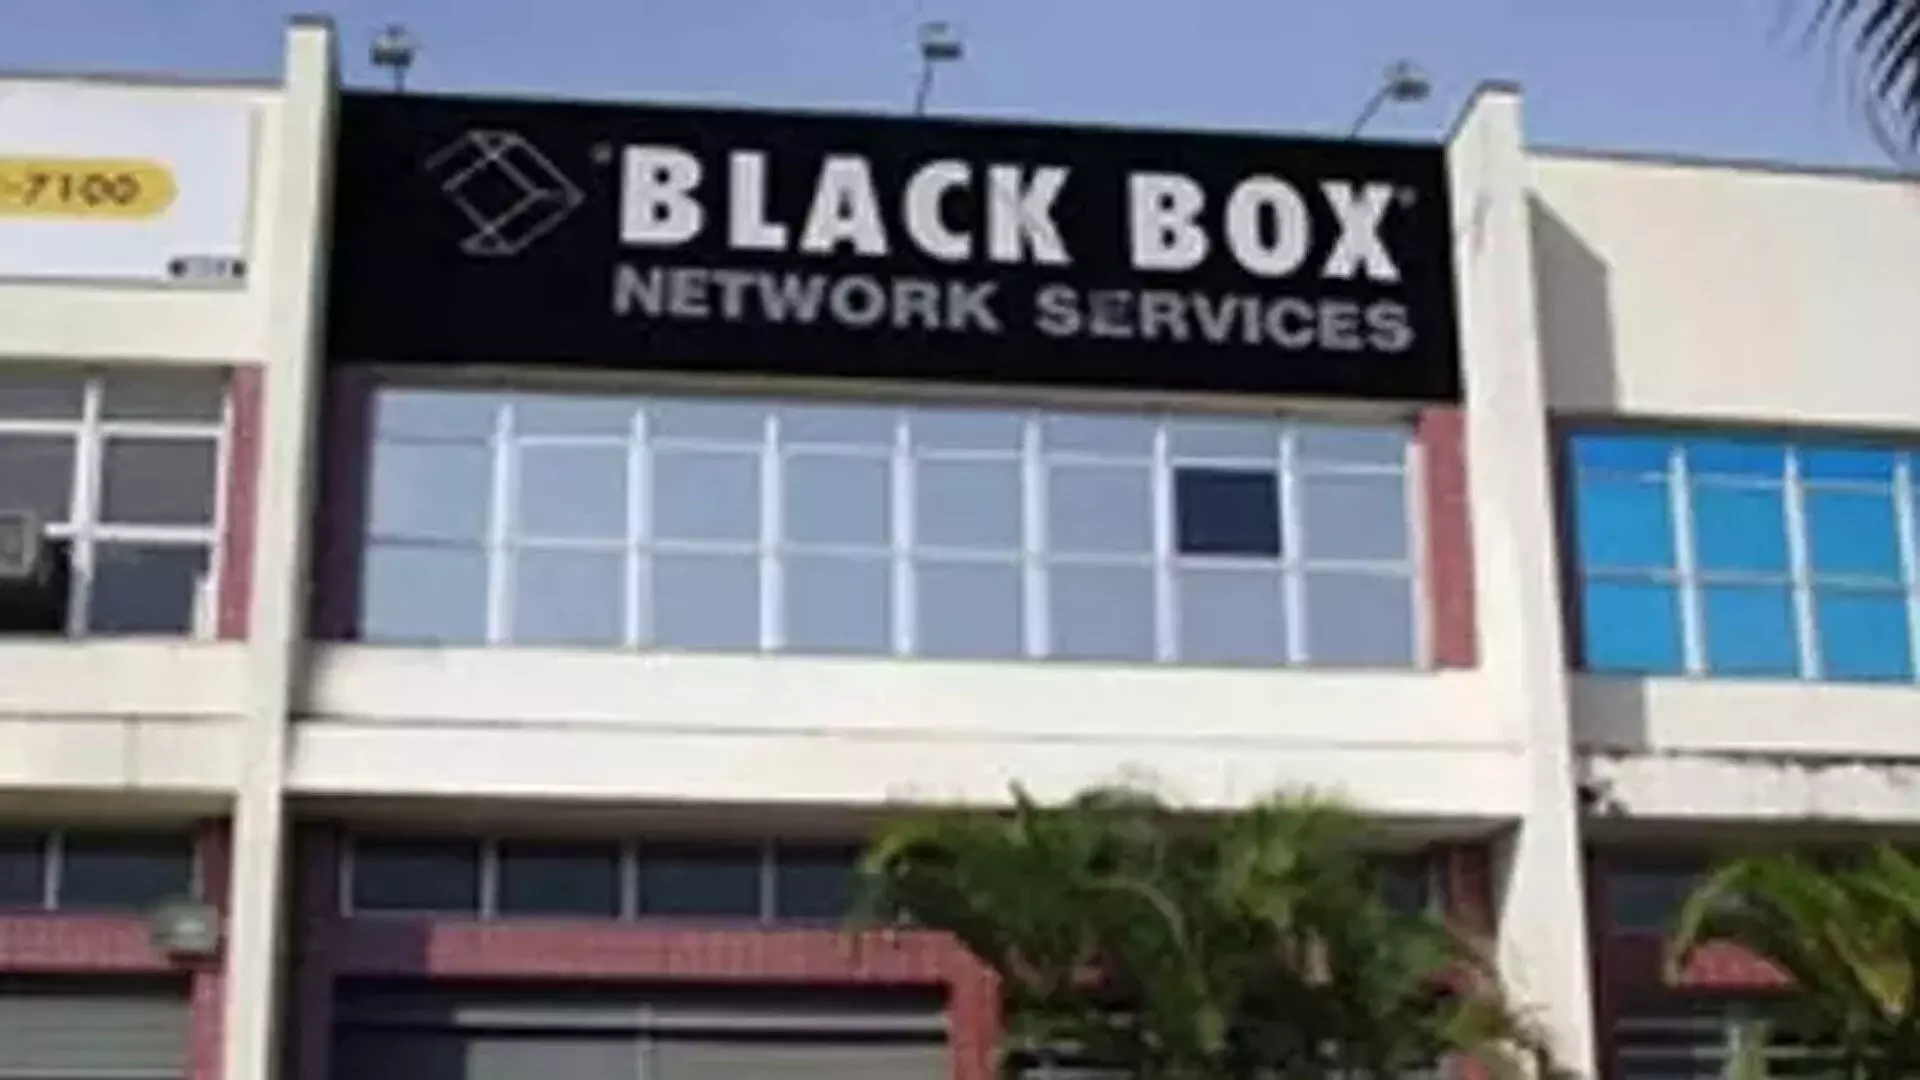 Essar IT कंपनी ब्लैक बॉक्स प्रेफरेंशियल इश्यू के जरिए 410 करोड़ रुपये जुटाएगी